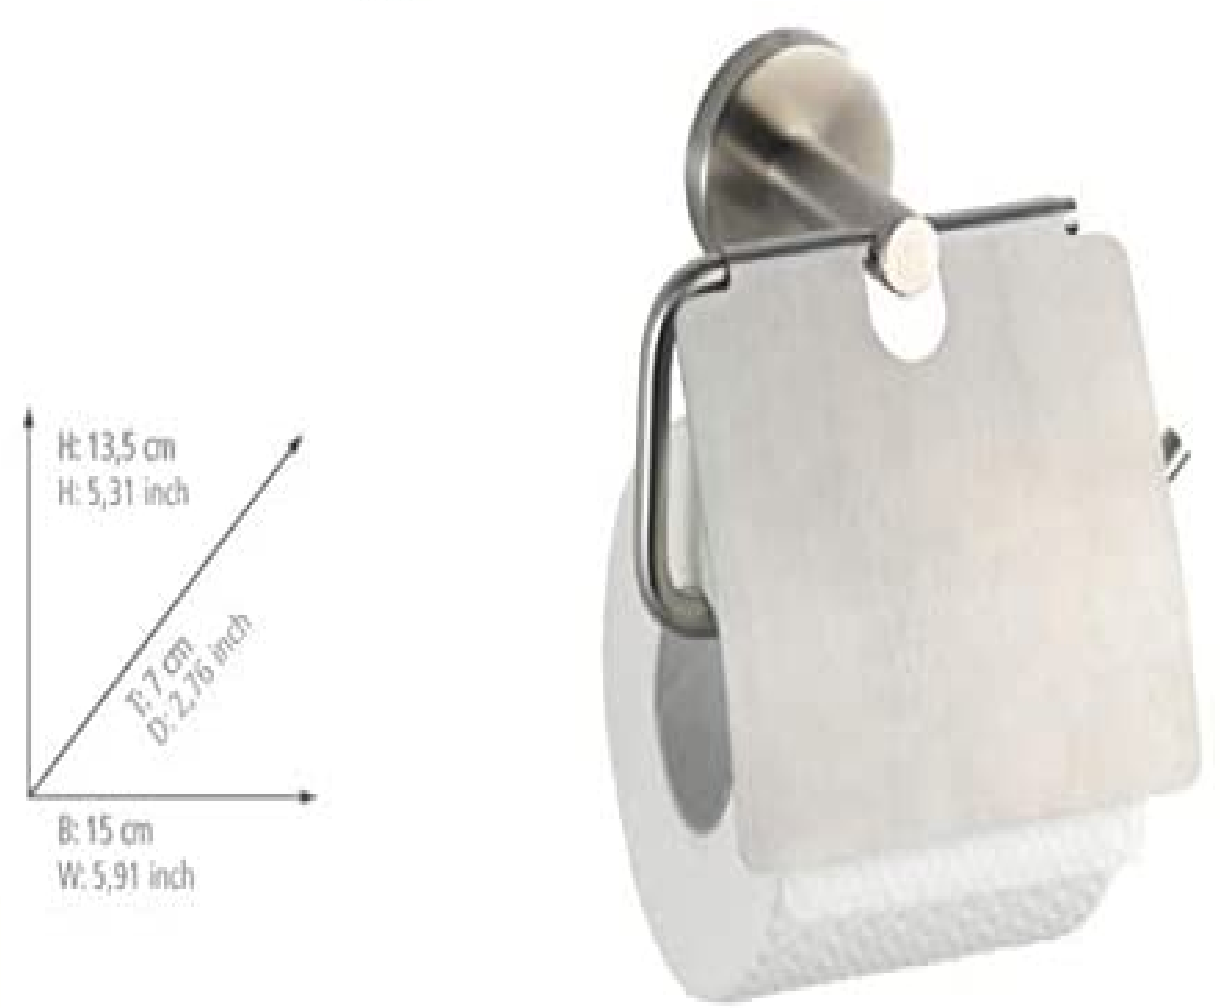 Toilettenpapierhalter mit Deckel Bosio Edelstahl matt - WC-Rollenhalter, Edelstahl rostfrei, 15 x 13.5 x 7 cm, Matt